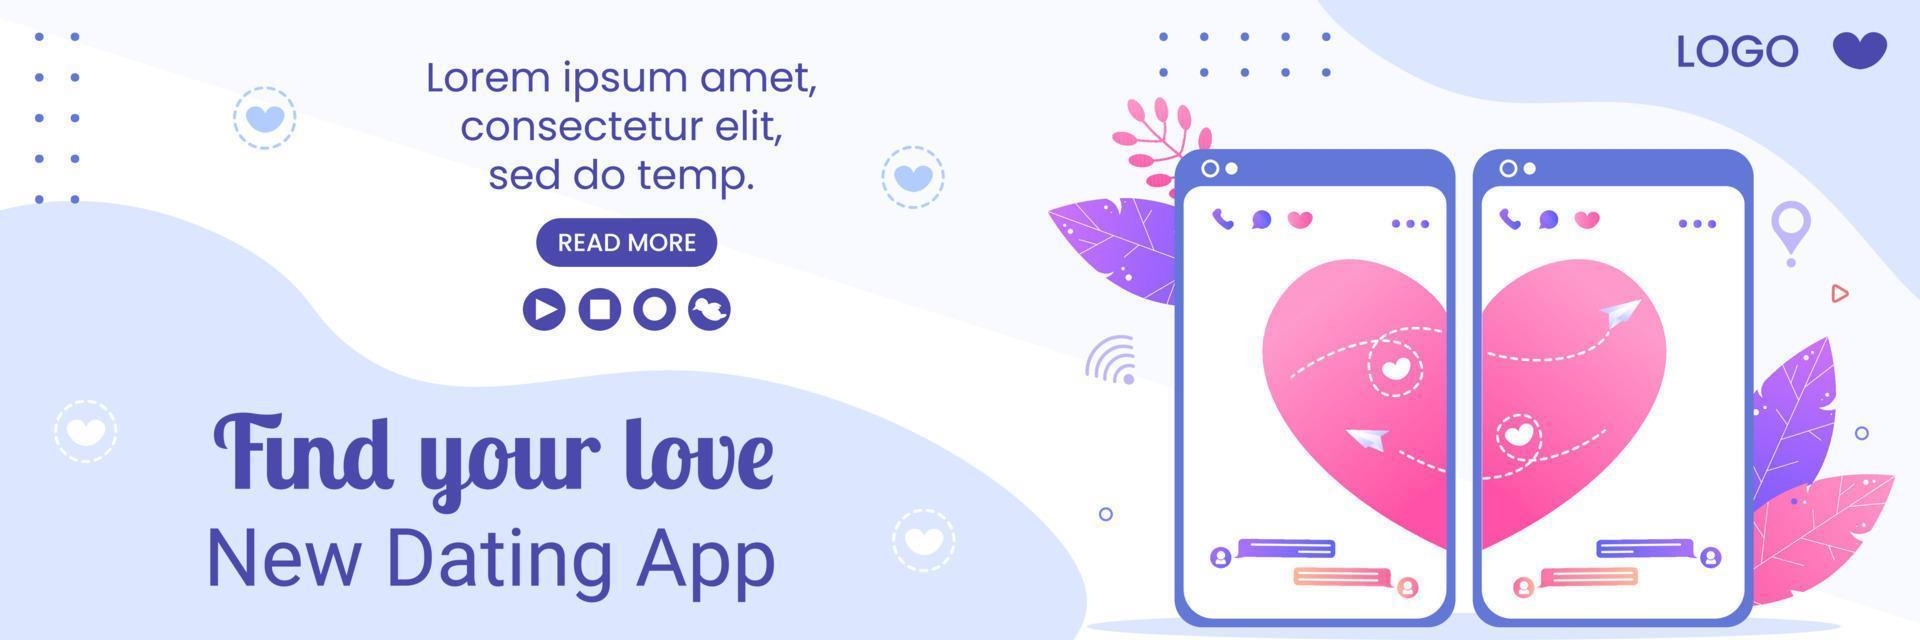 aplicativo de namoro para uma ilustração de design plano de modelo de capa de jogo de amor editável de fundo quadrado adequado para mídia social ou cartão de cumprimentos dos namorados vetor